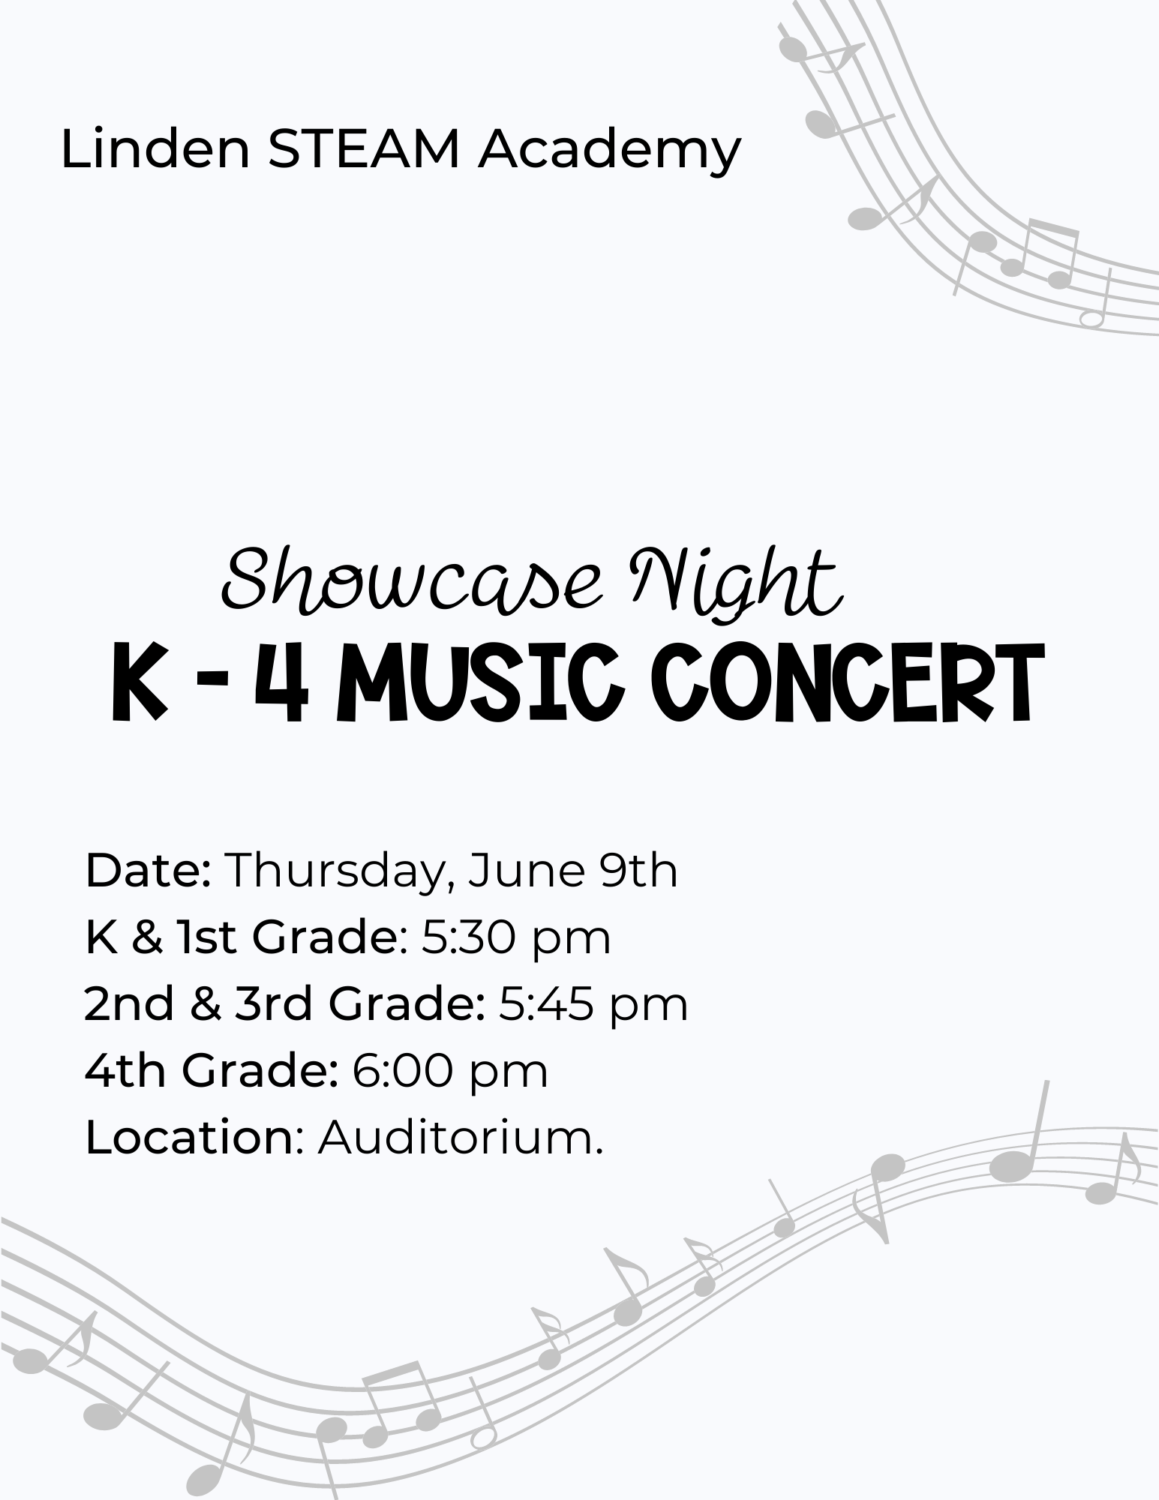 Showcase Night Music Concert schedule K4 Linden STEAM